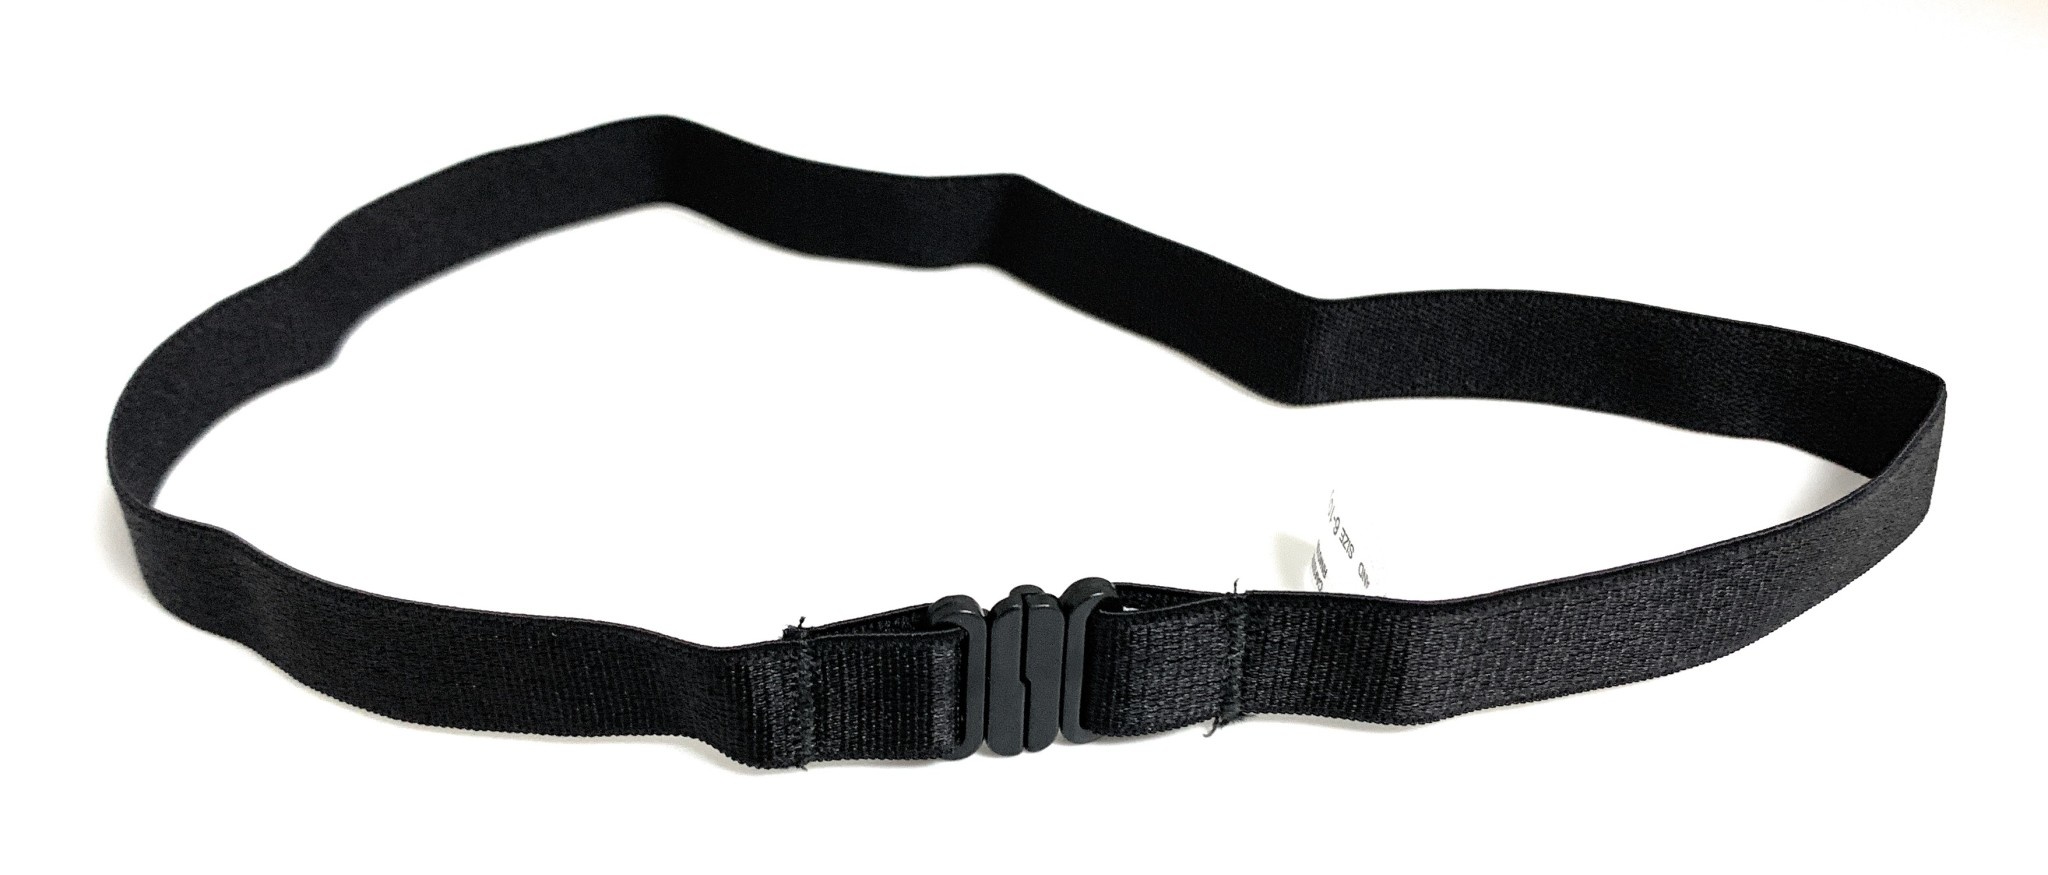 YEYUNTO Elastic Belts for Women Studded Belt for Dress Black Waist